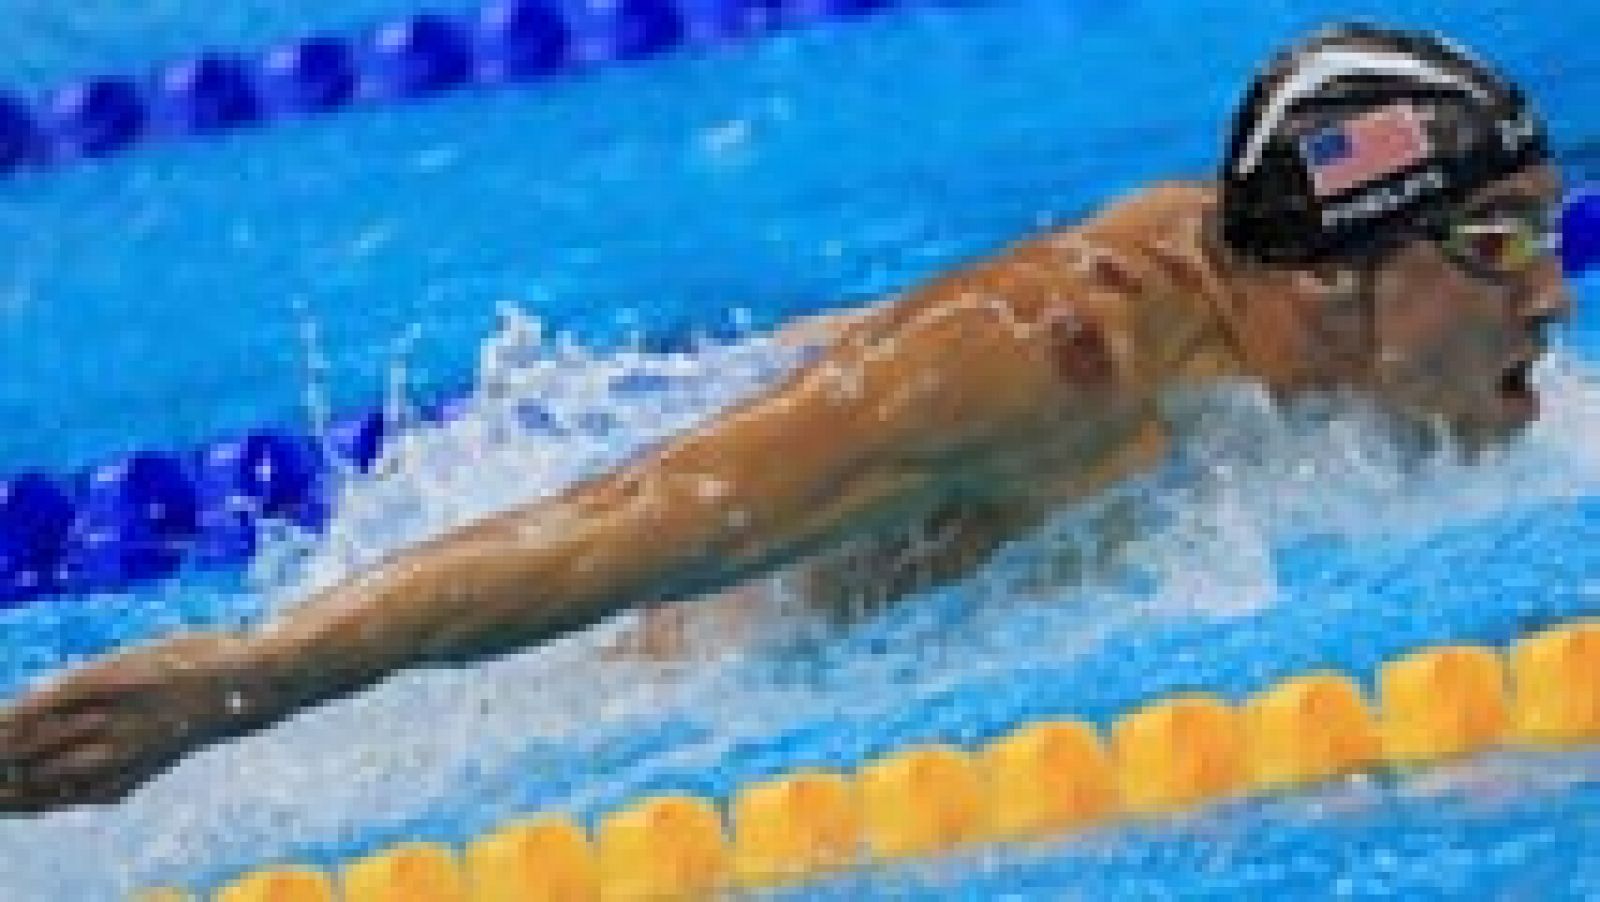 Río 2016. Natación | Phelps, superado por Kenderesi en semifinales de 200 mariposa